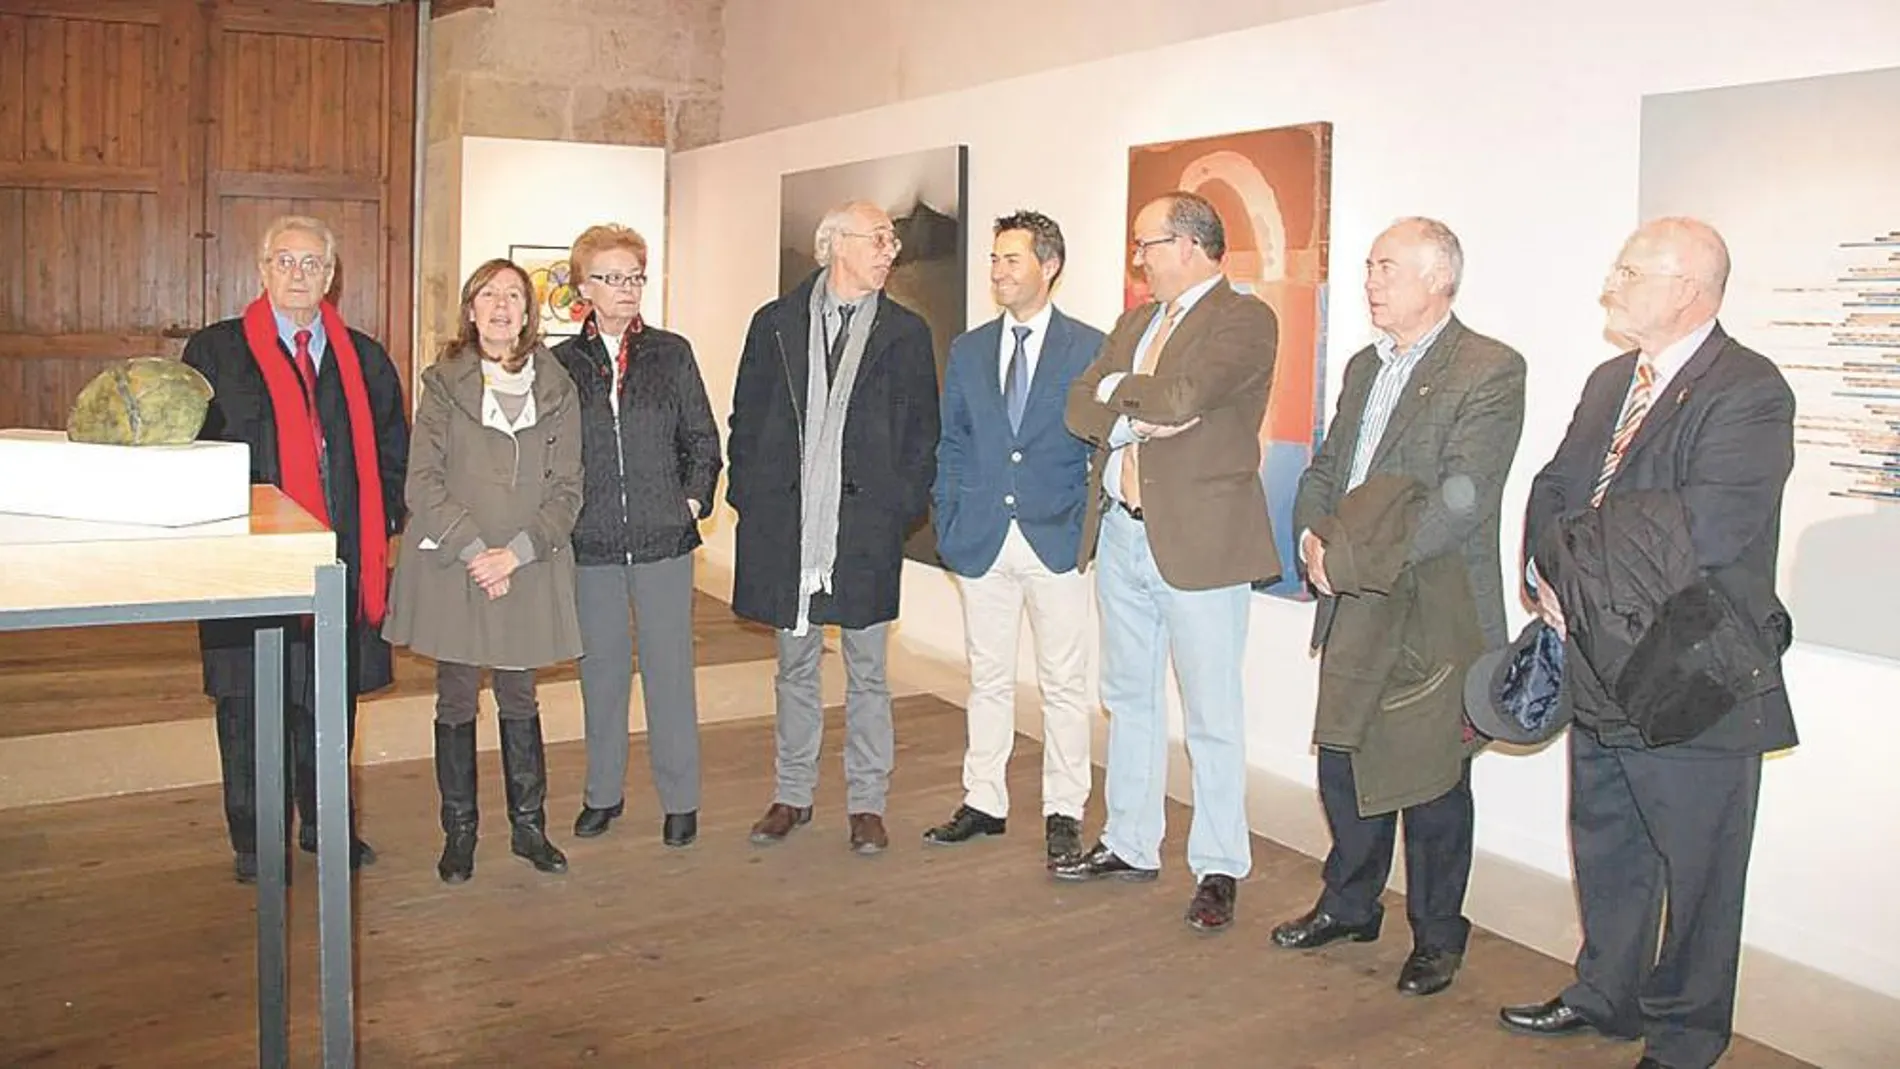 La comisaria de la exposición, María Teresa Alario, explica una obra a Ana Alonso y Alberto Jiménez-Arellano Alonso, entre otros